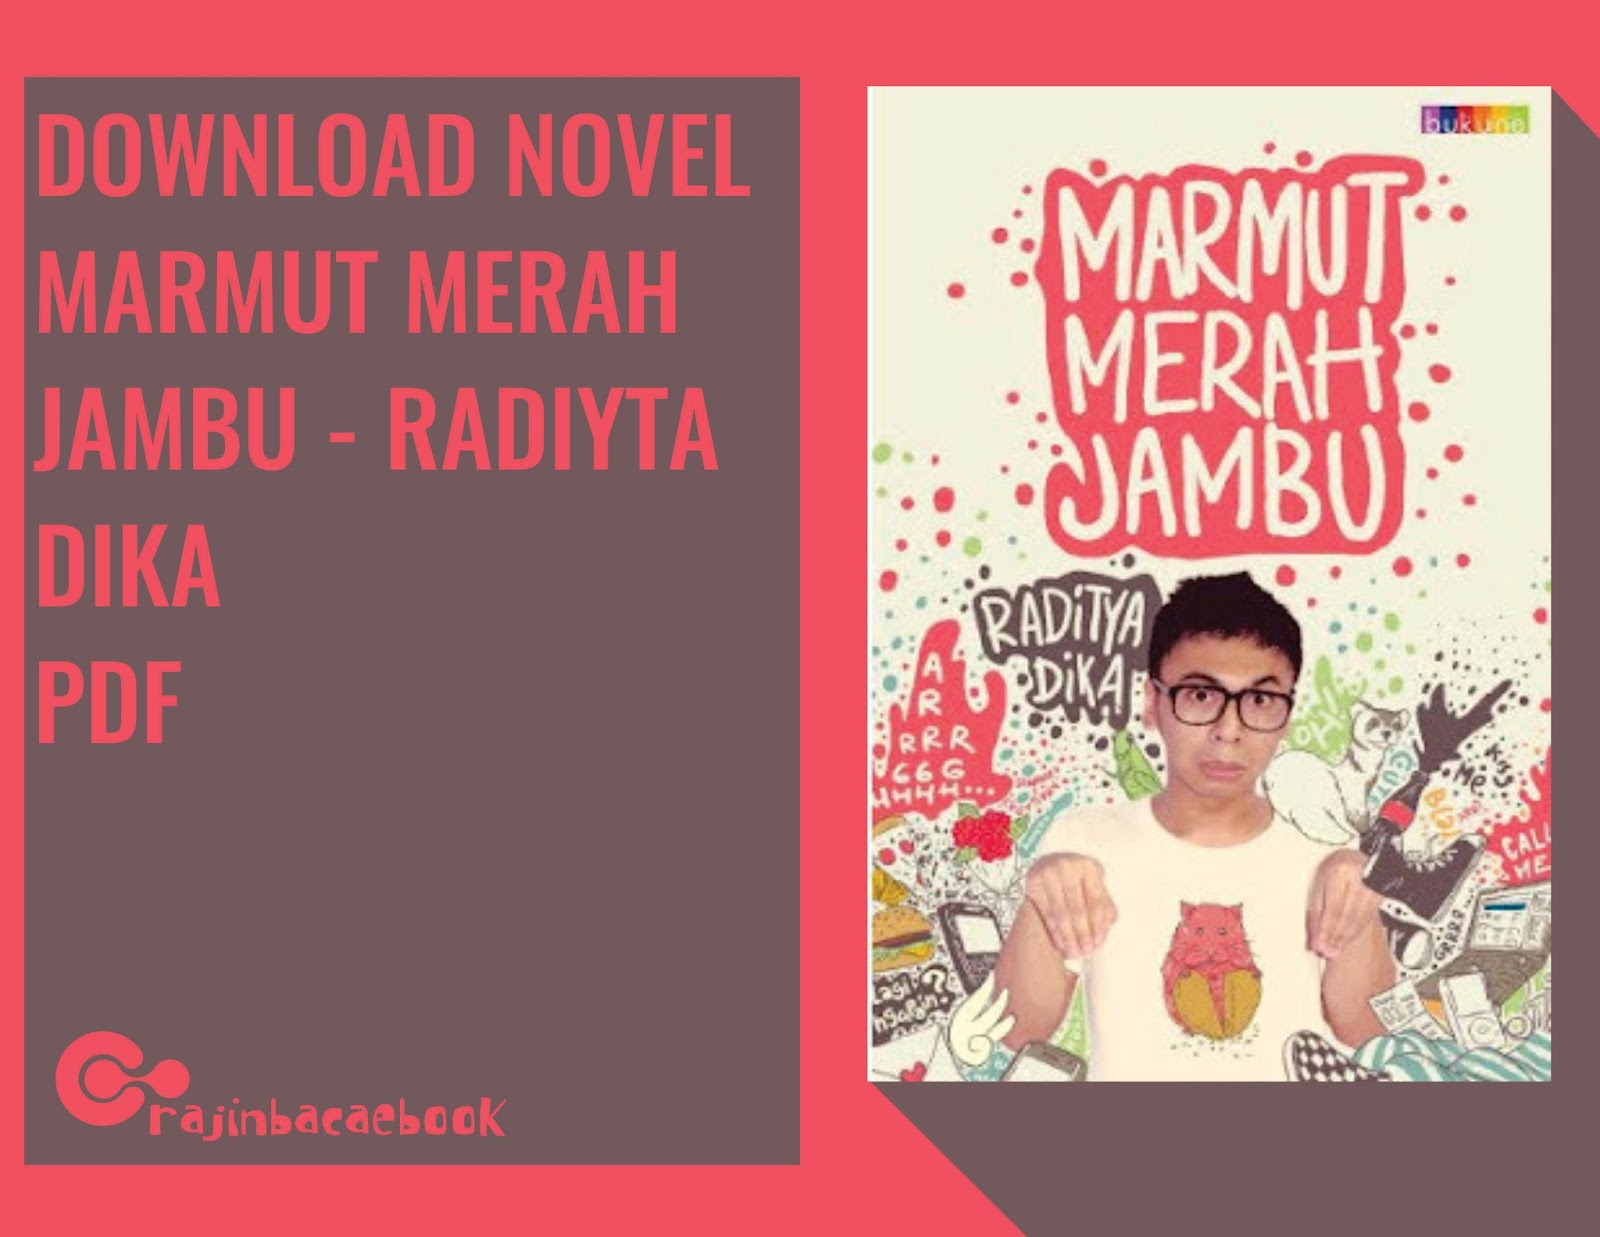 Download Ebook Gratis Raditya  Dika  Marmut  Merah  Jambu  pdf Penggiat 